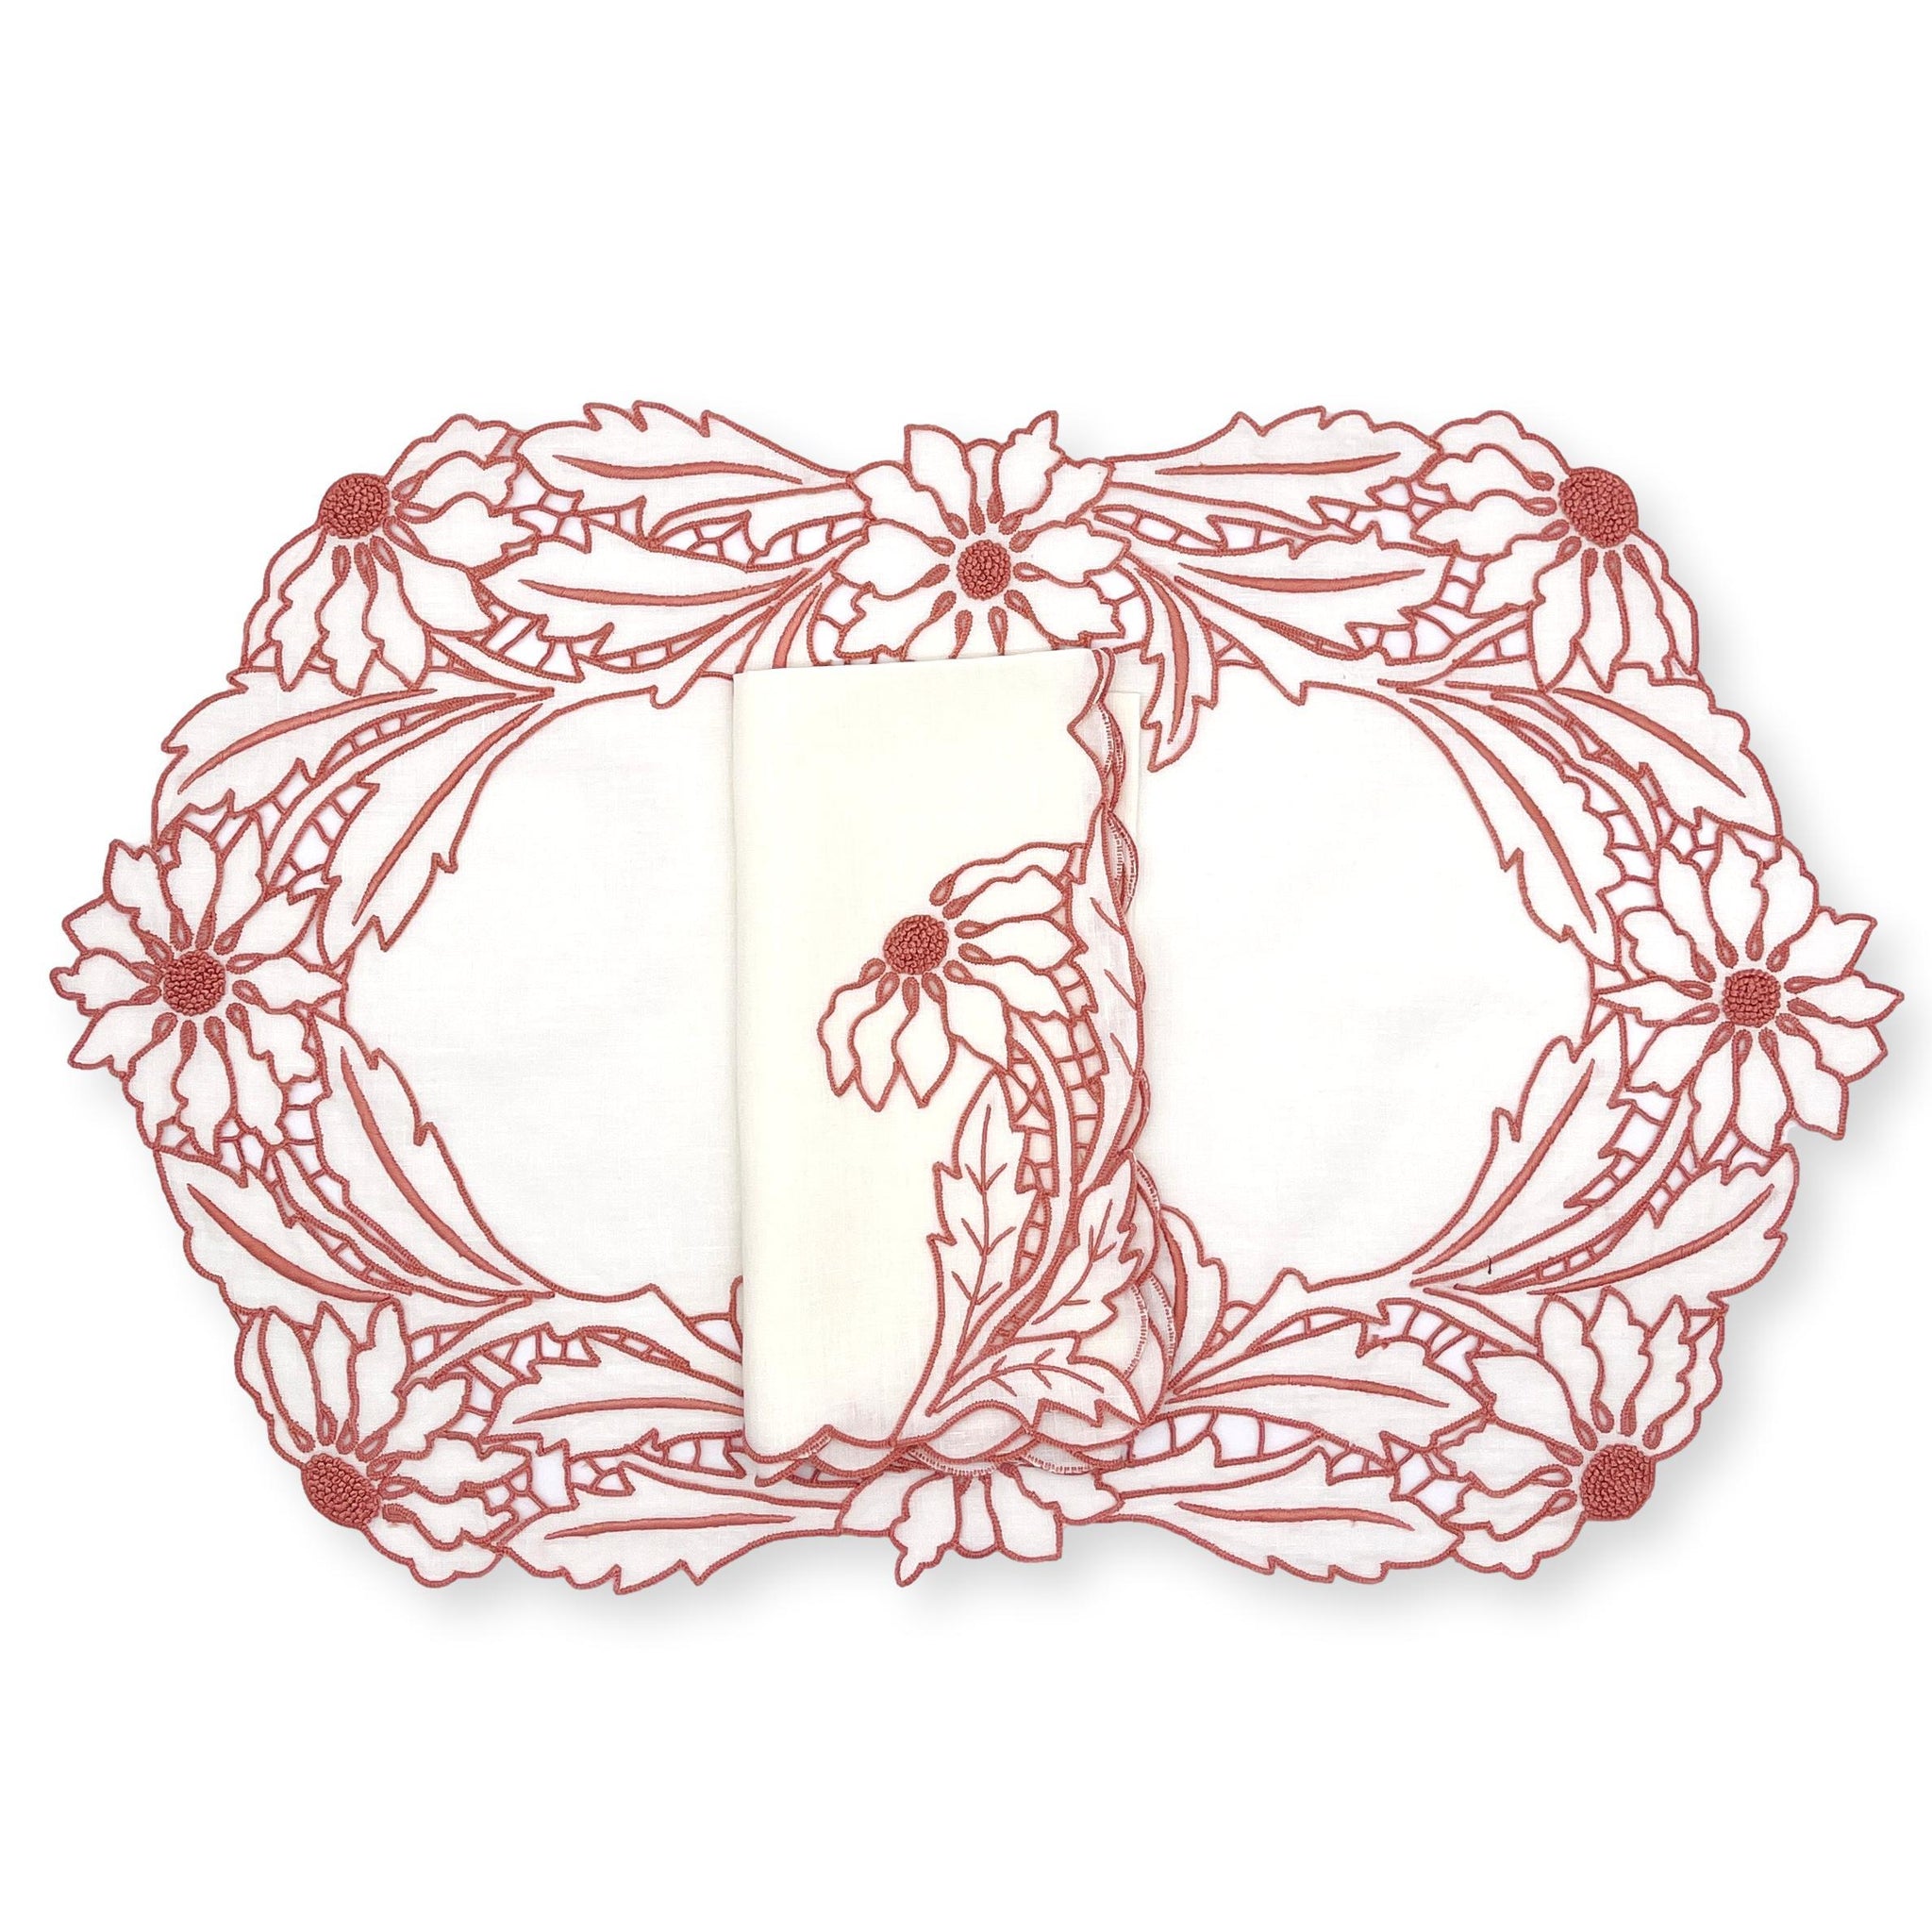 100% Cotton Embroidery Thread – Julia B. Casa